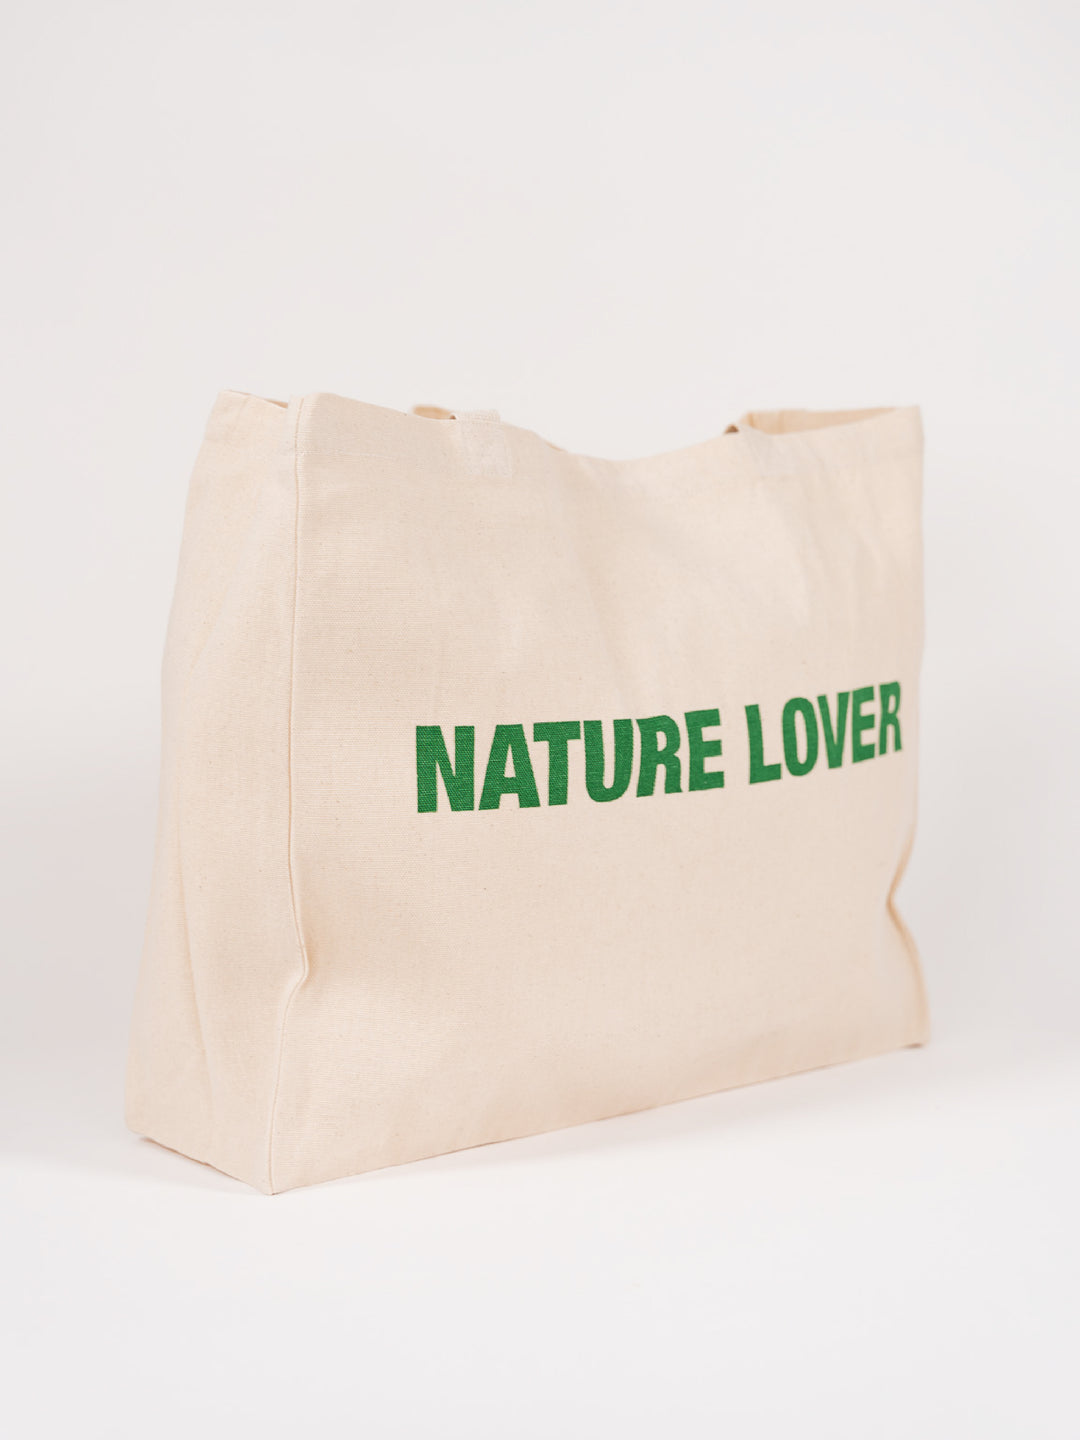 Tote bag #Naturelovers